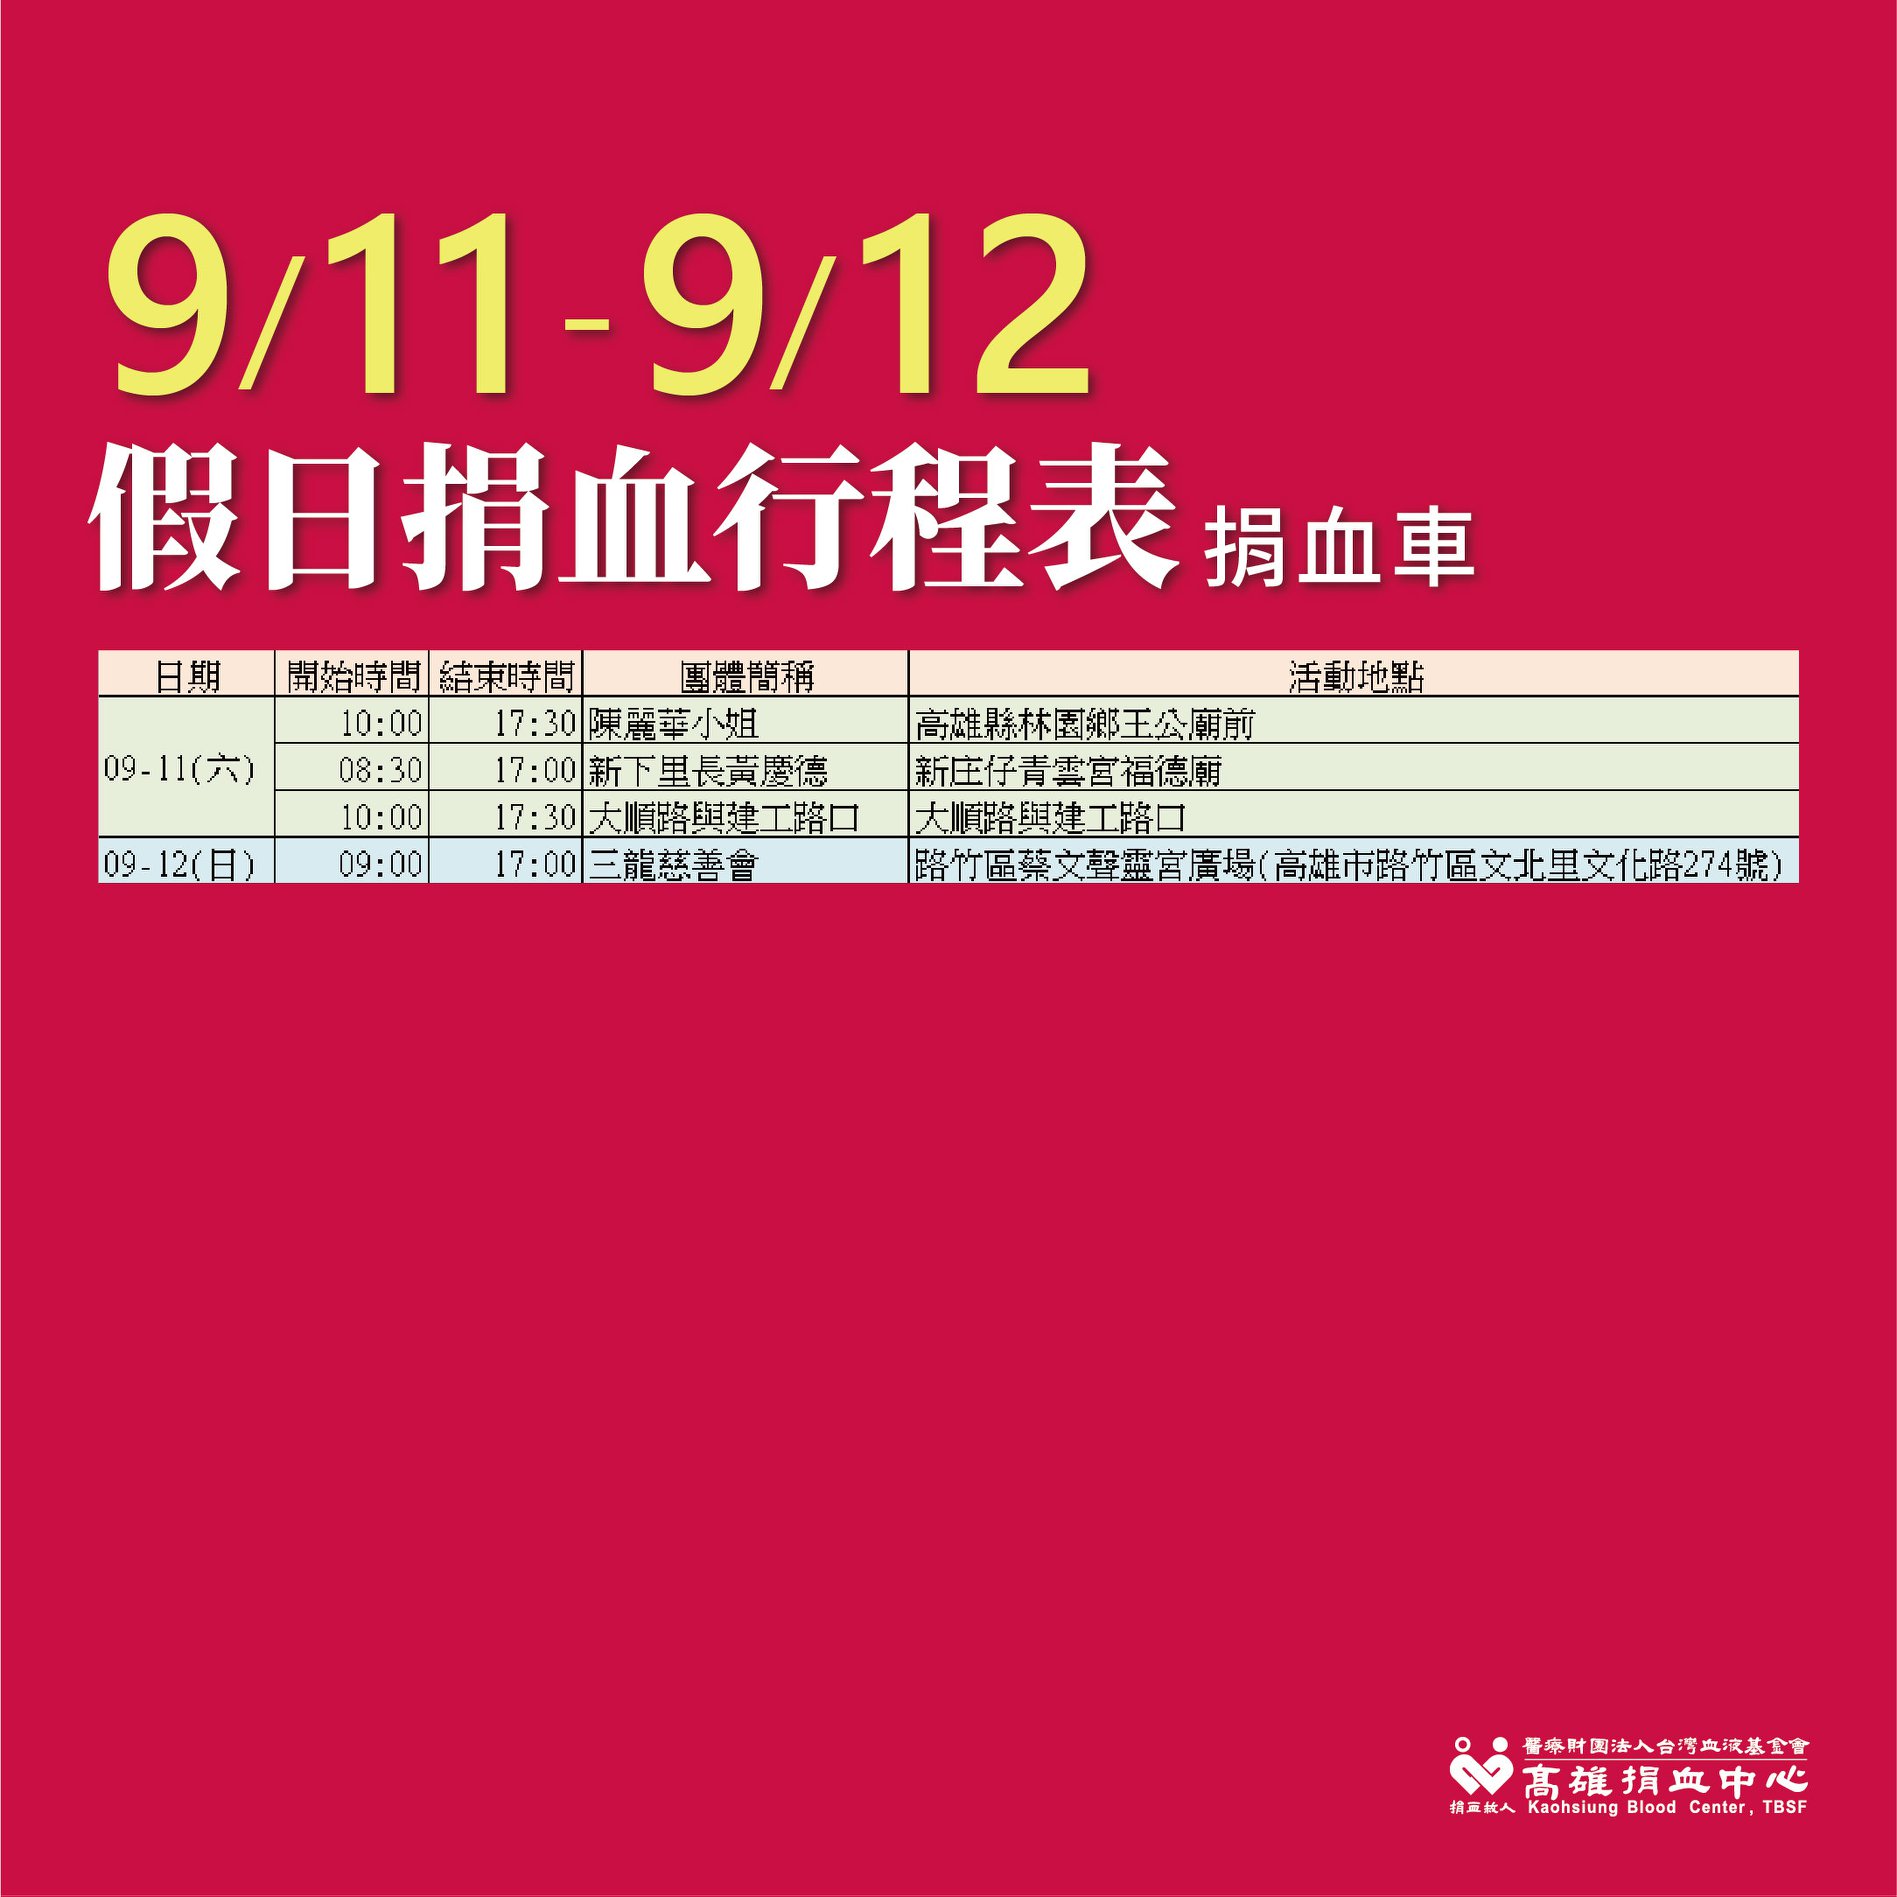 圖 9/11-12(六日)捐血活動送月餅/禮券$